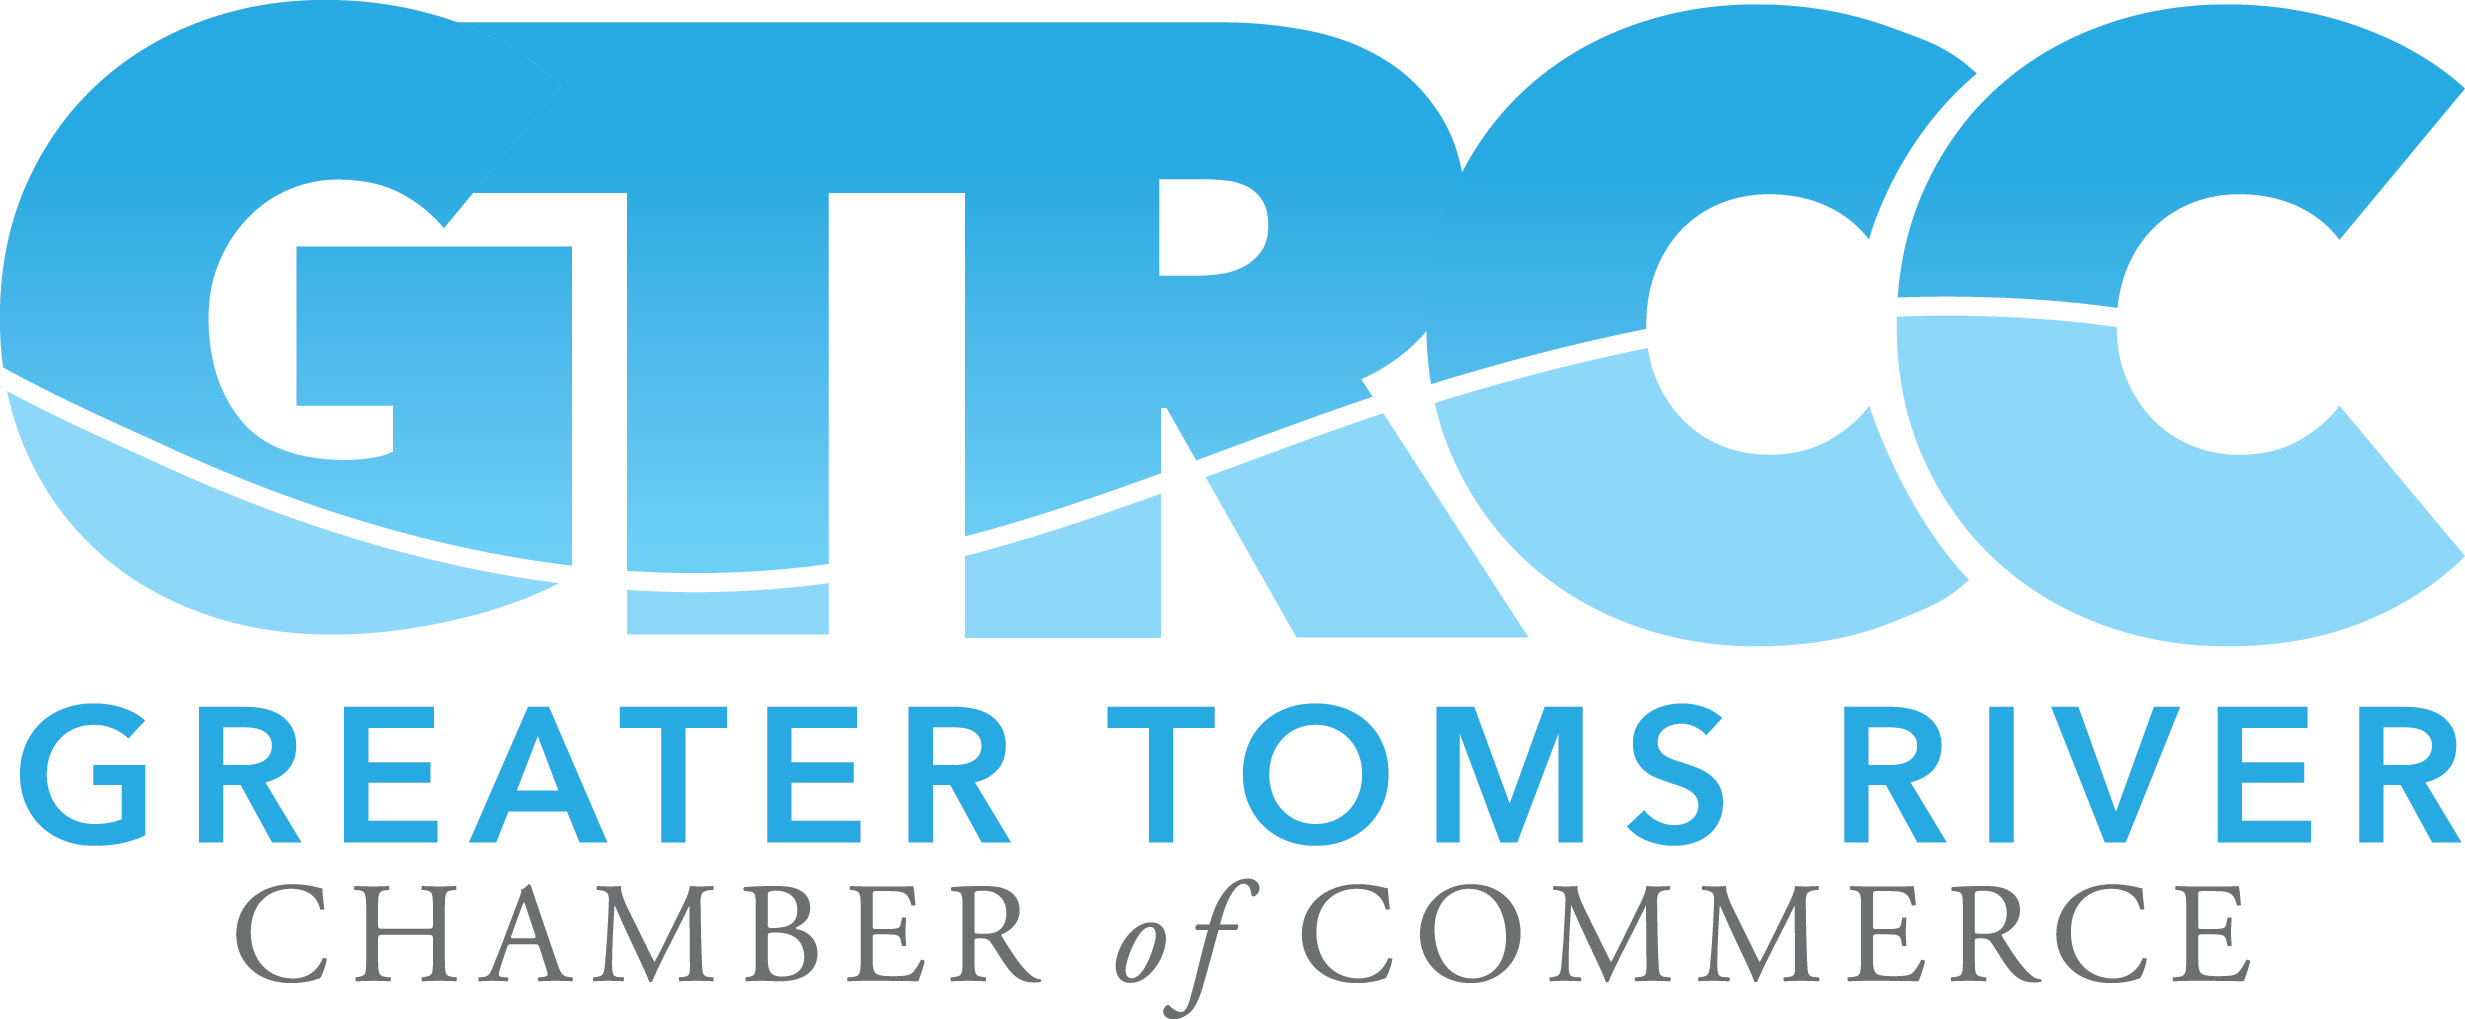 GTRCC Logo MAIN.jpg